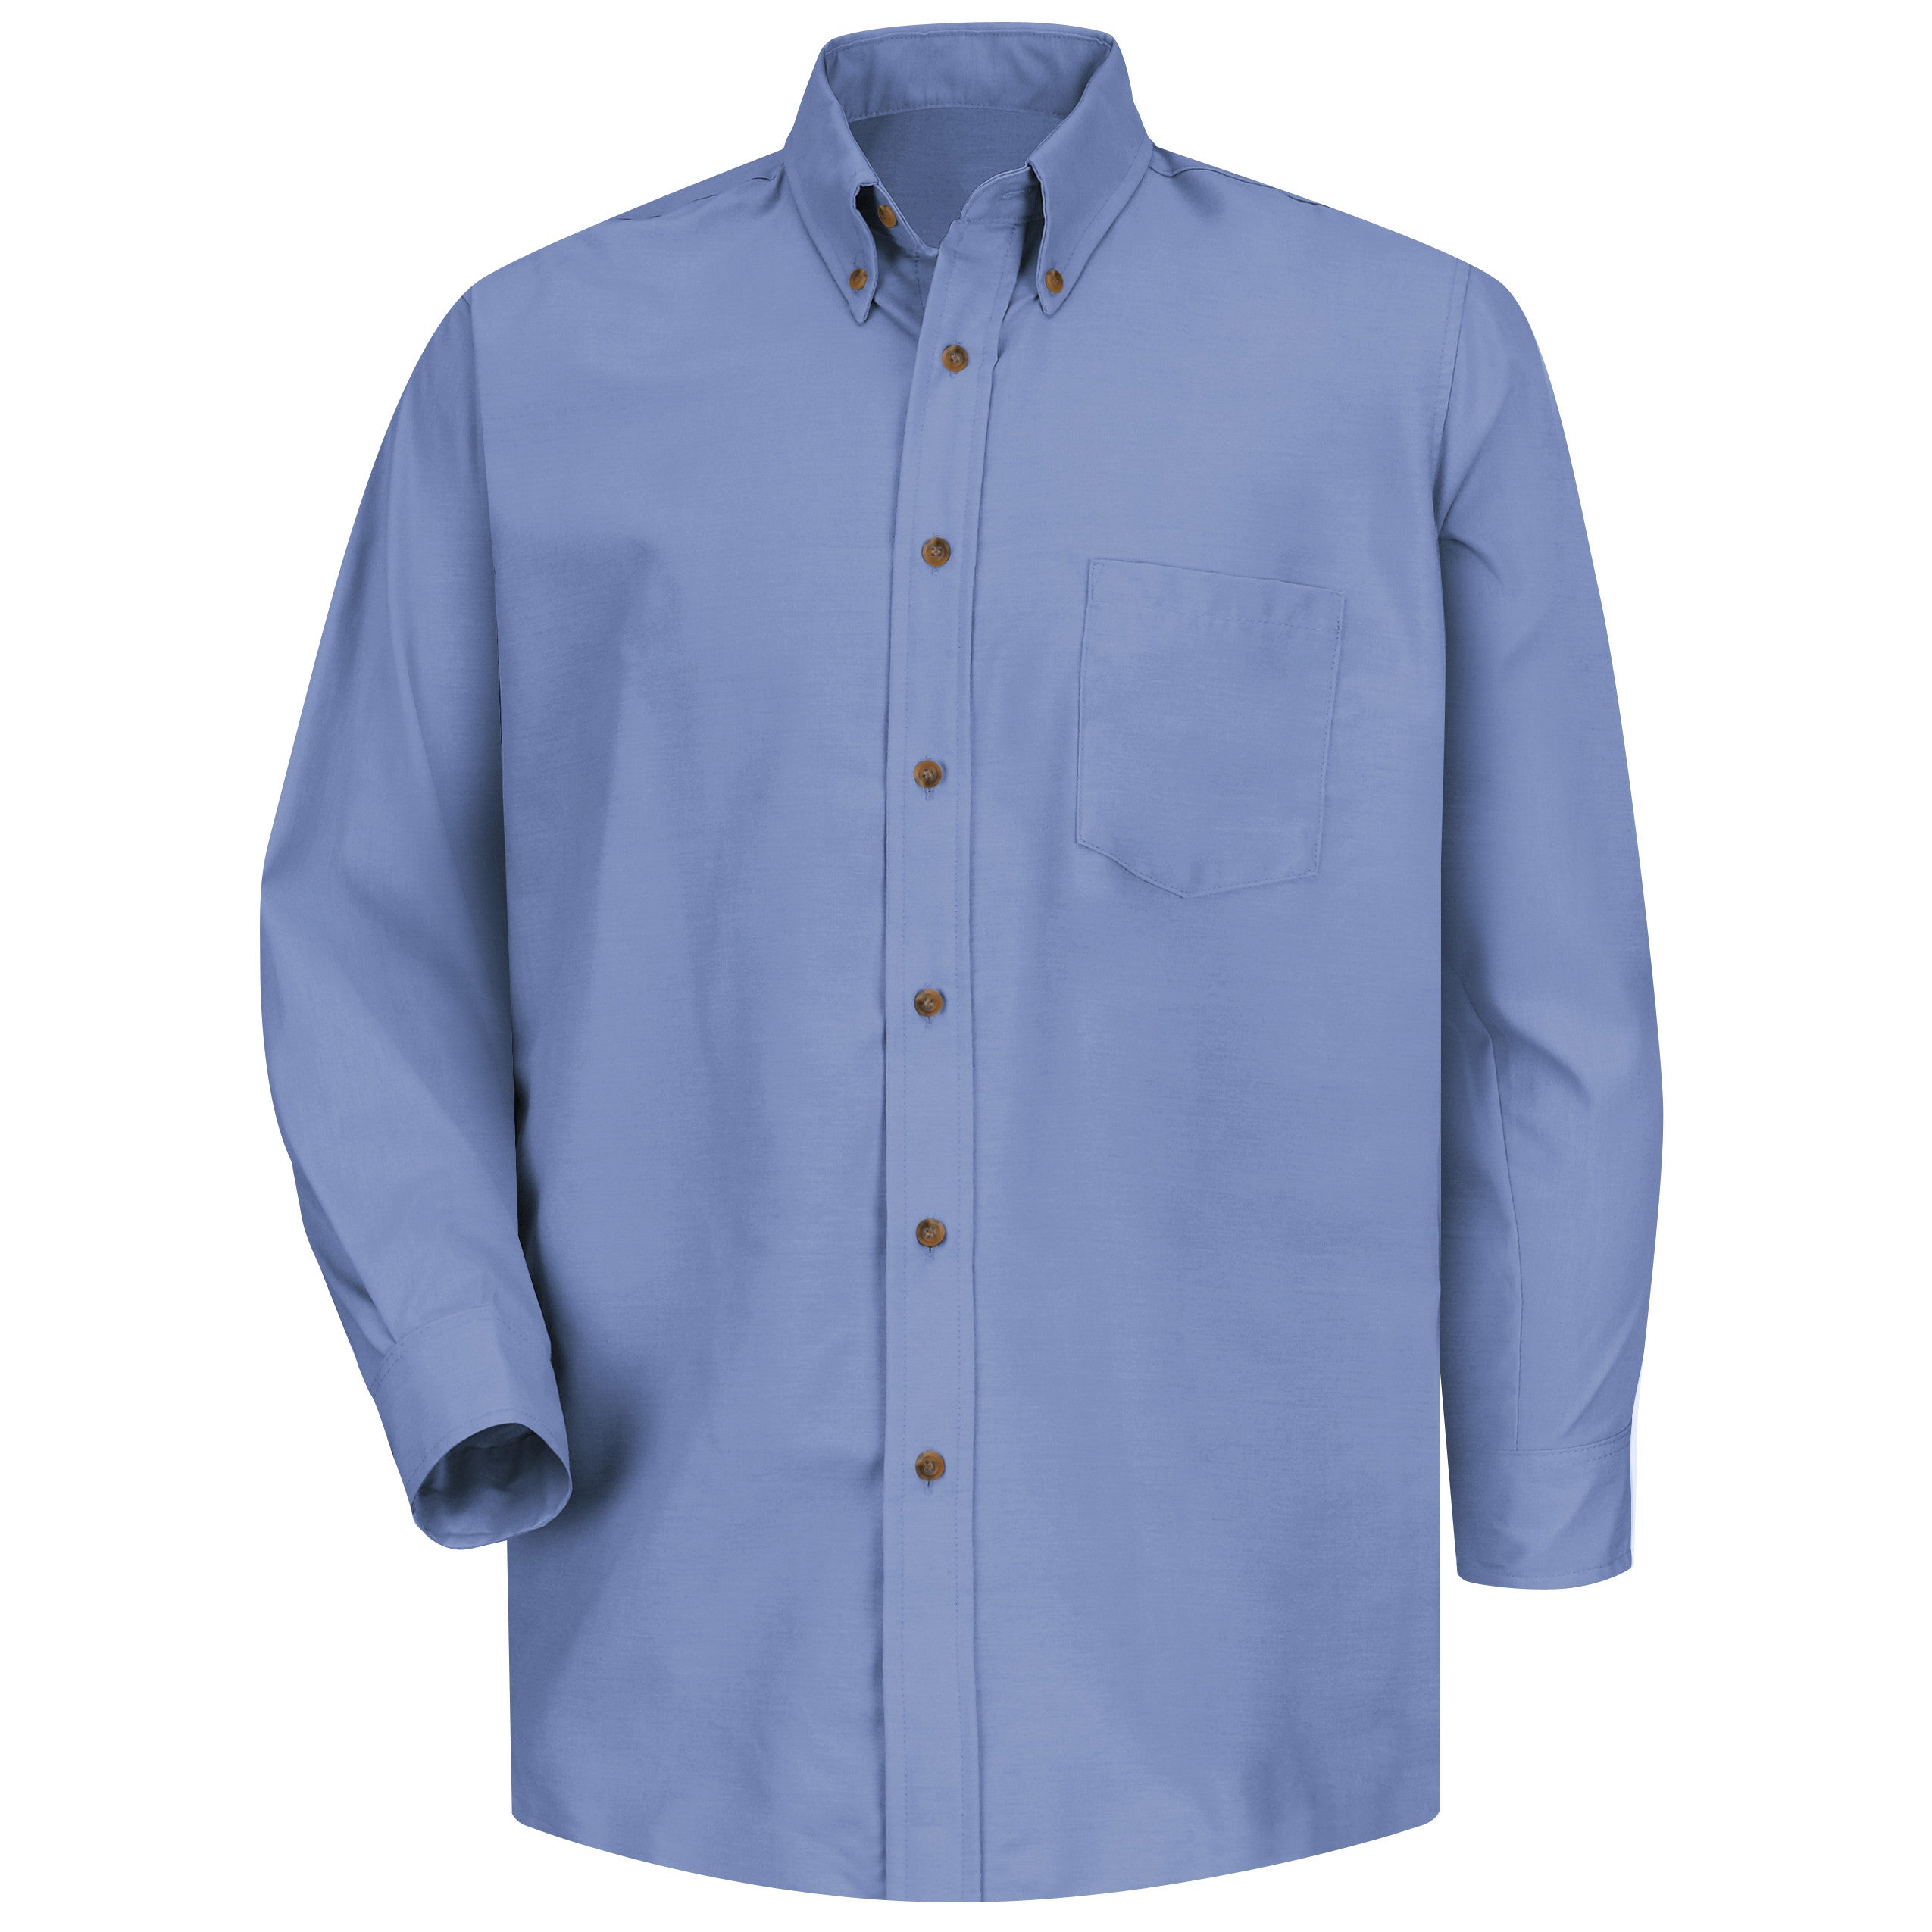 Men's Long Sleeve Poplin Dress Shirt SP90 - Light Blue-eSafety Supplies, Inc